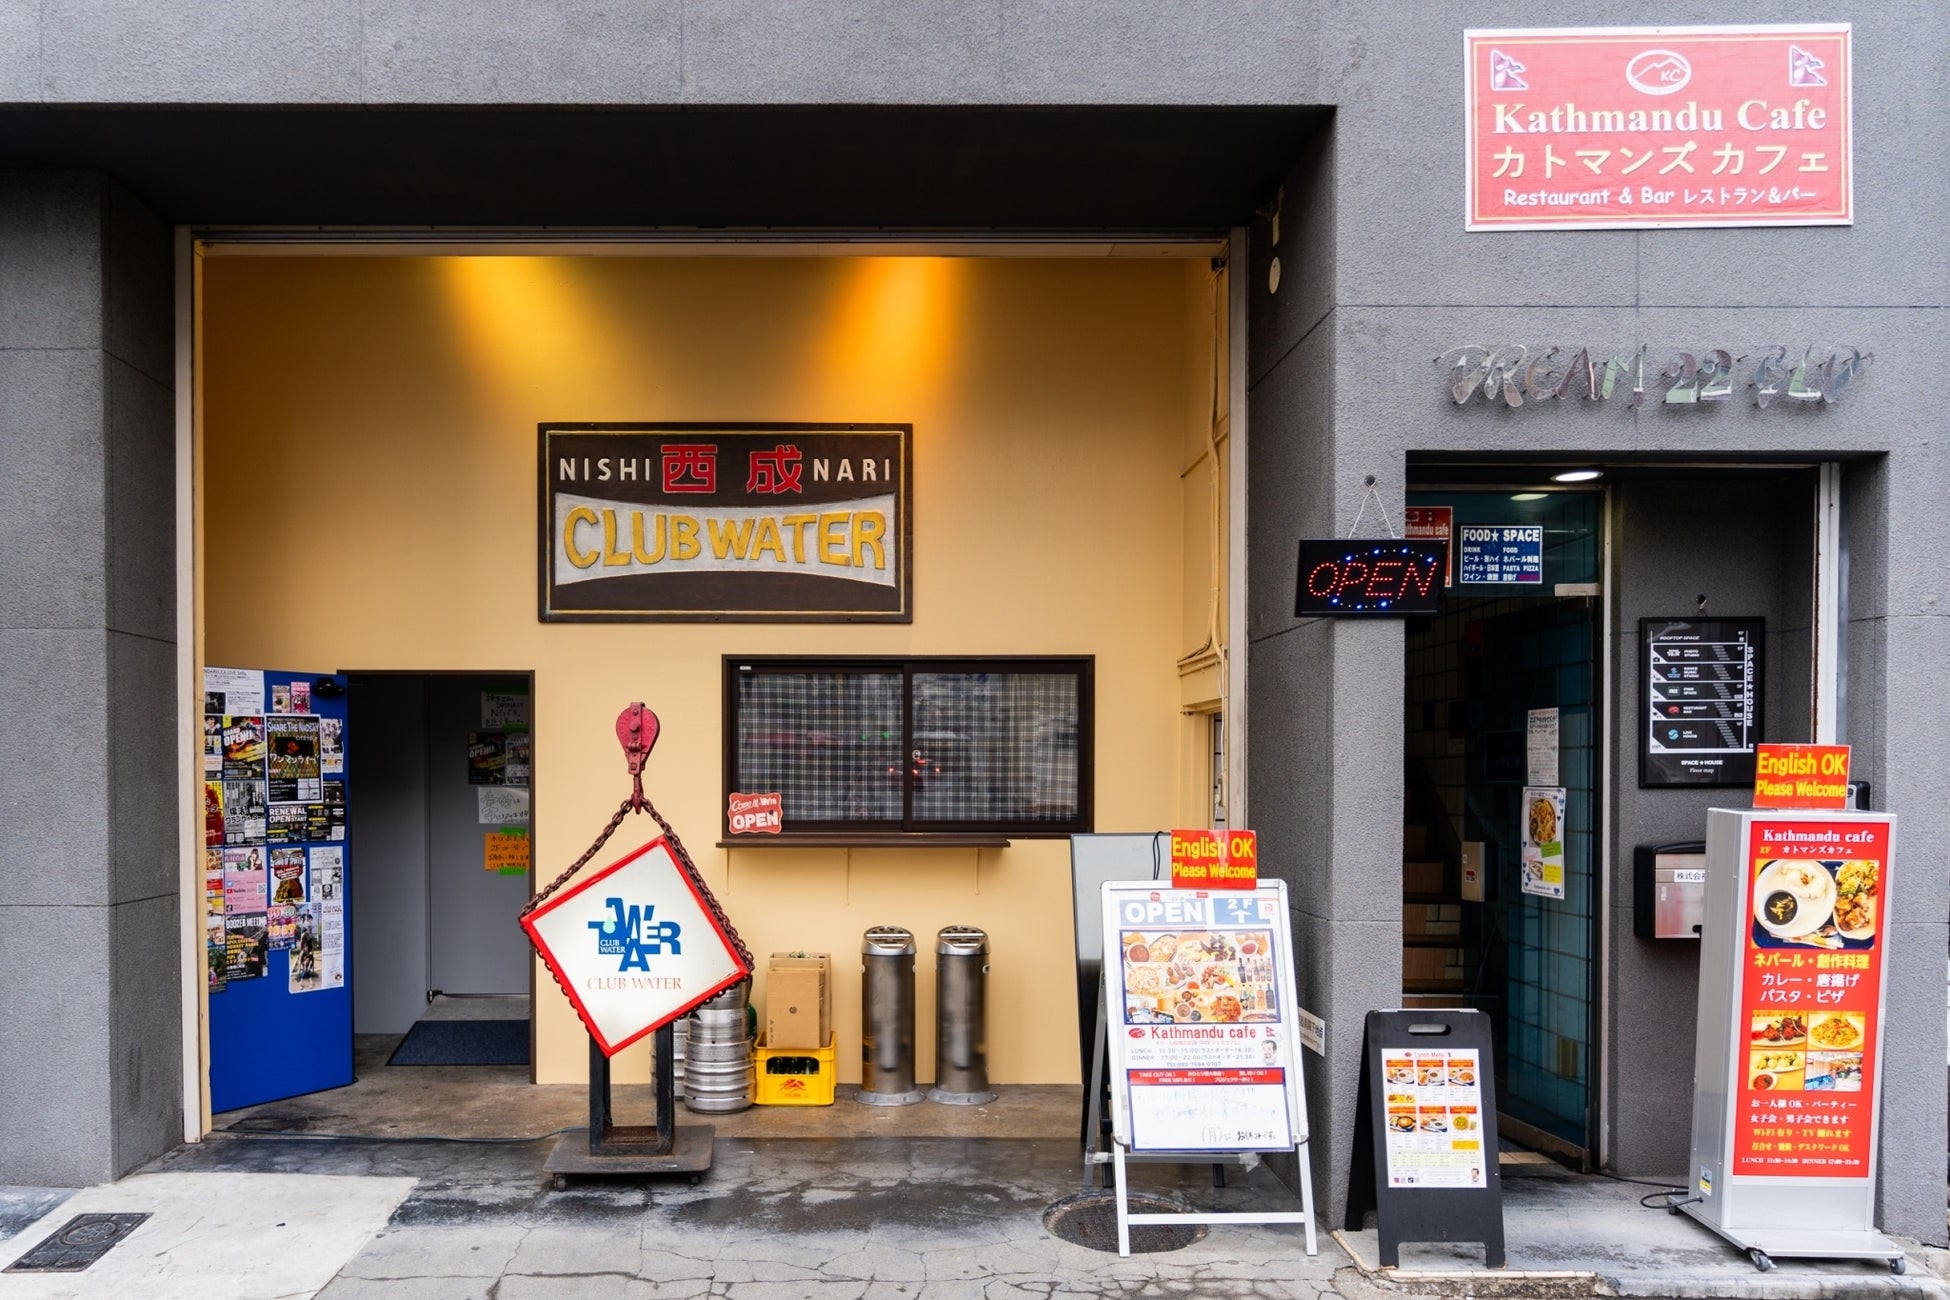 【大阪西成】日本で初めて本格的なネパール料理を広めた「カトマンズ・カフェ」がレストランを刷新し、アーテ...